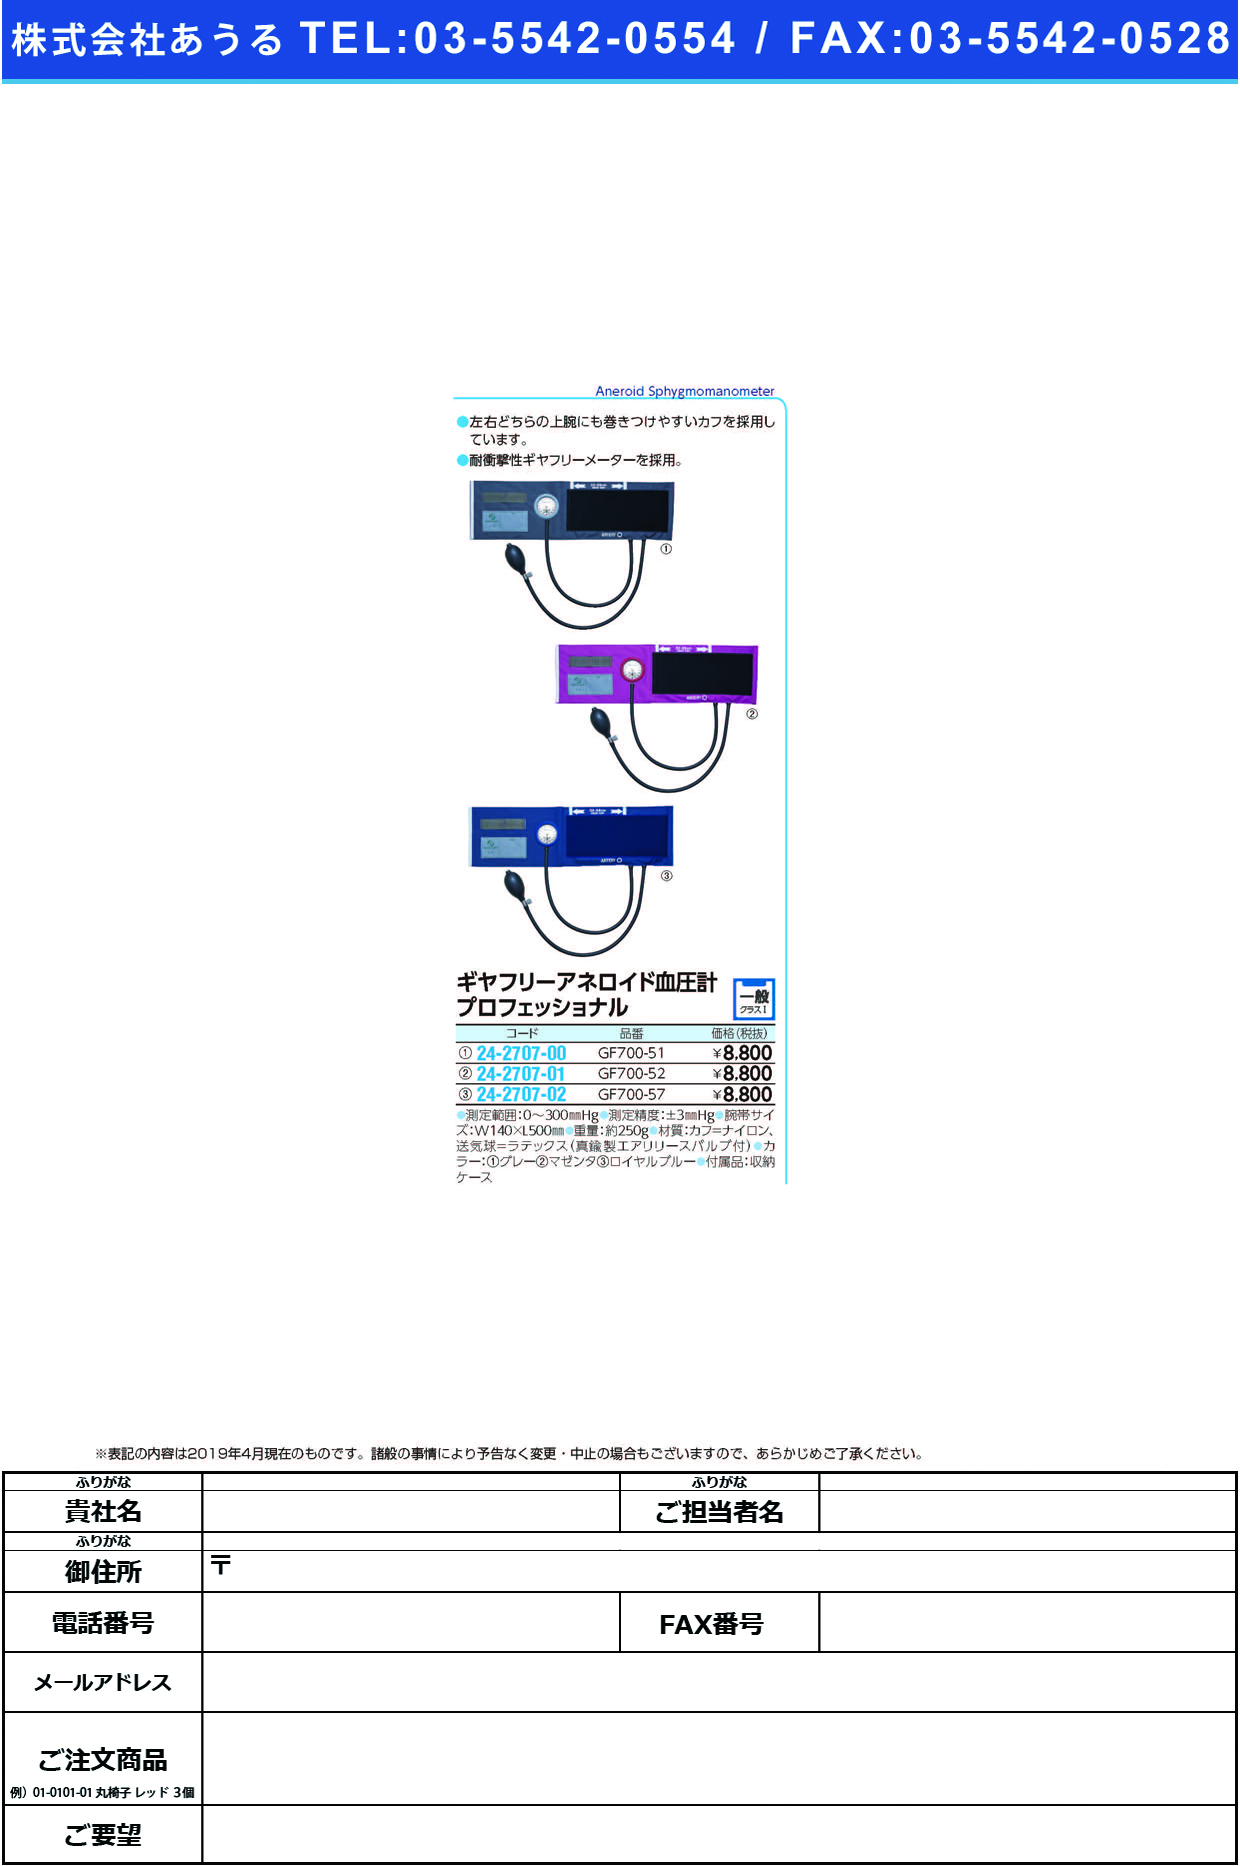 (24-2707-01)ギヤフリー血圧計プロフェッショナル GF700-52(ﾏｾﾞﾝﾀ) ｷﾞﾔﾌﾘｰｹﾂｱﾂｹｲﾌﾟﾛﾌｪｯｼ【1台単位】【2019年カタログ商品】